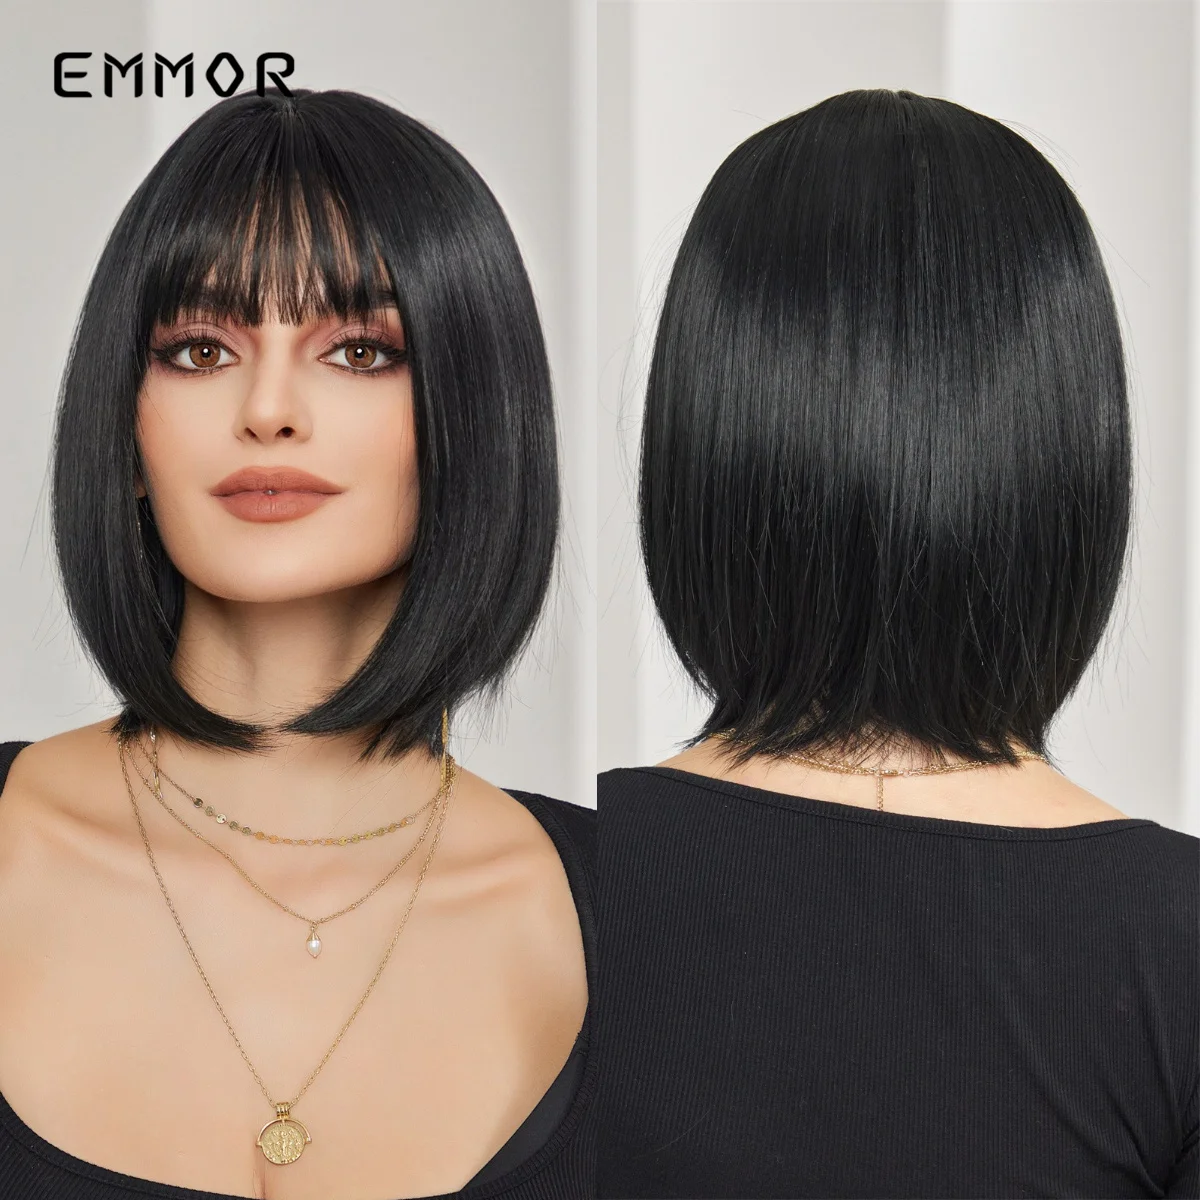 

Синтетический натуральный короткий черный прямой парик EMMOR с челкой для женщин, термостойкие парики боб, Искусственные парики для косплея